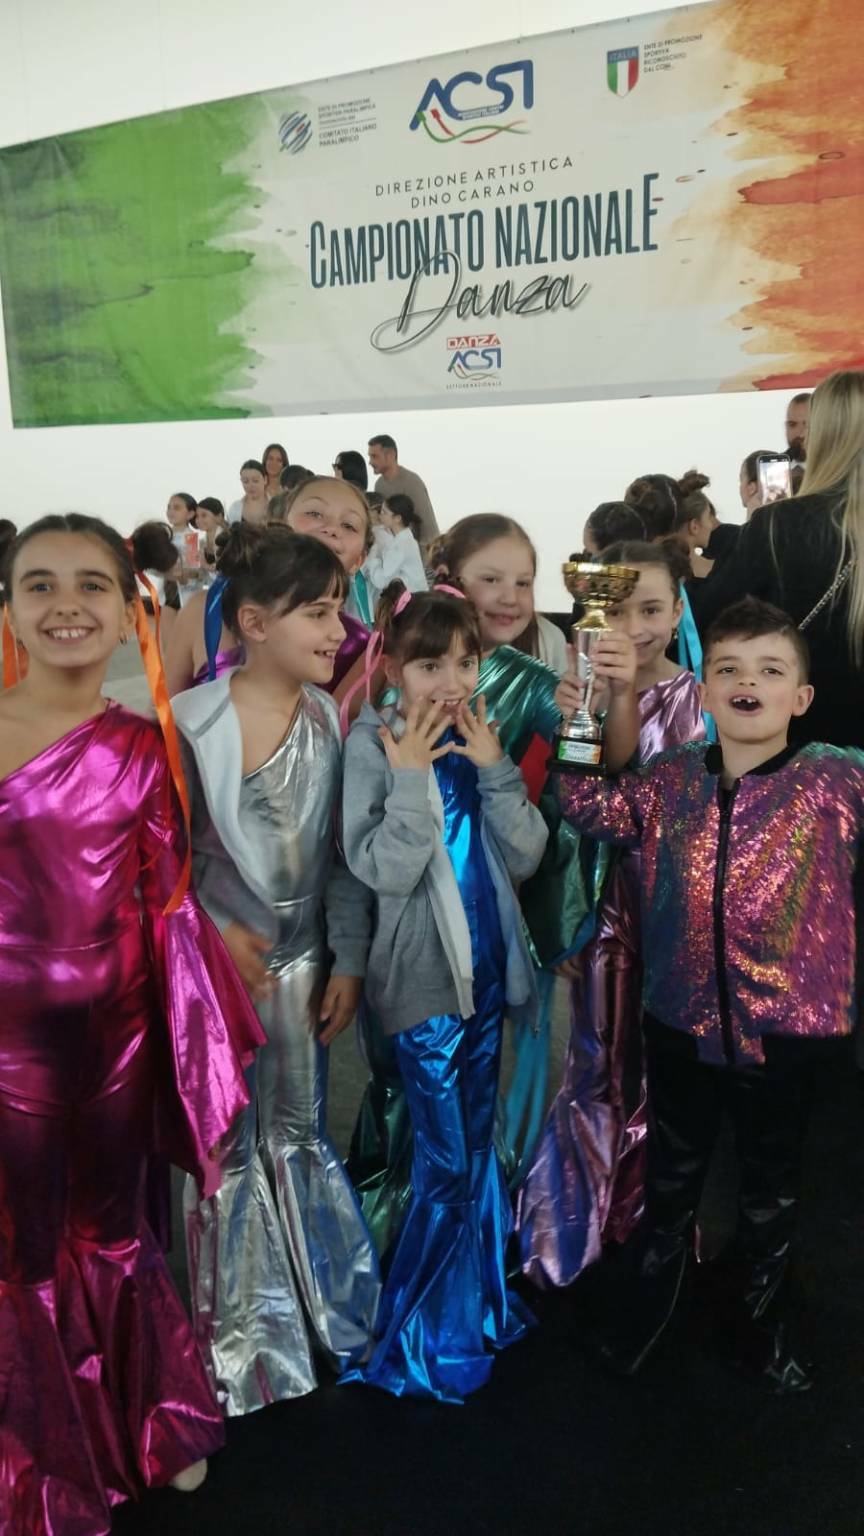 Successo per le piccole ballerine del "Centro studi Positano Danza"che conquistano il primo posto al campionato di Giugliano